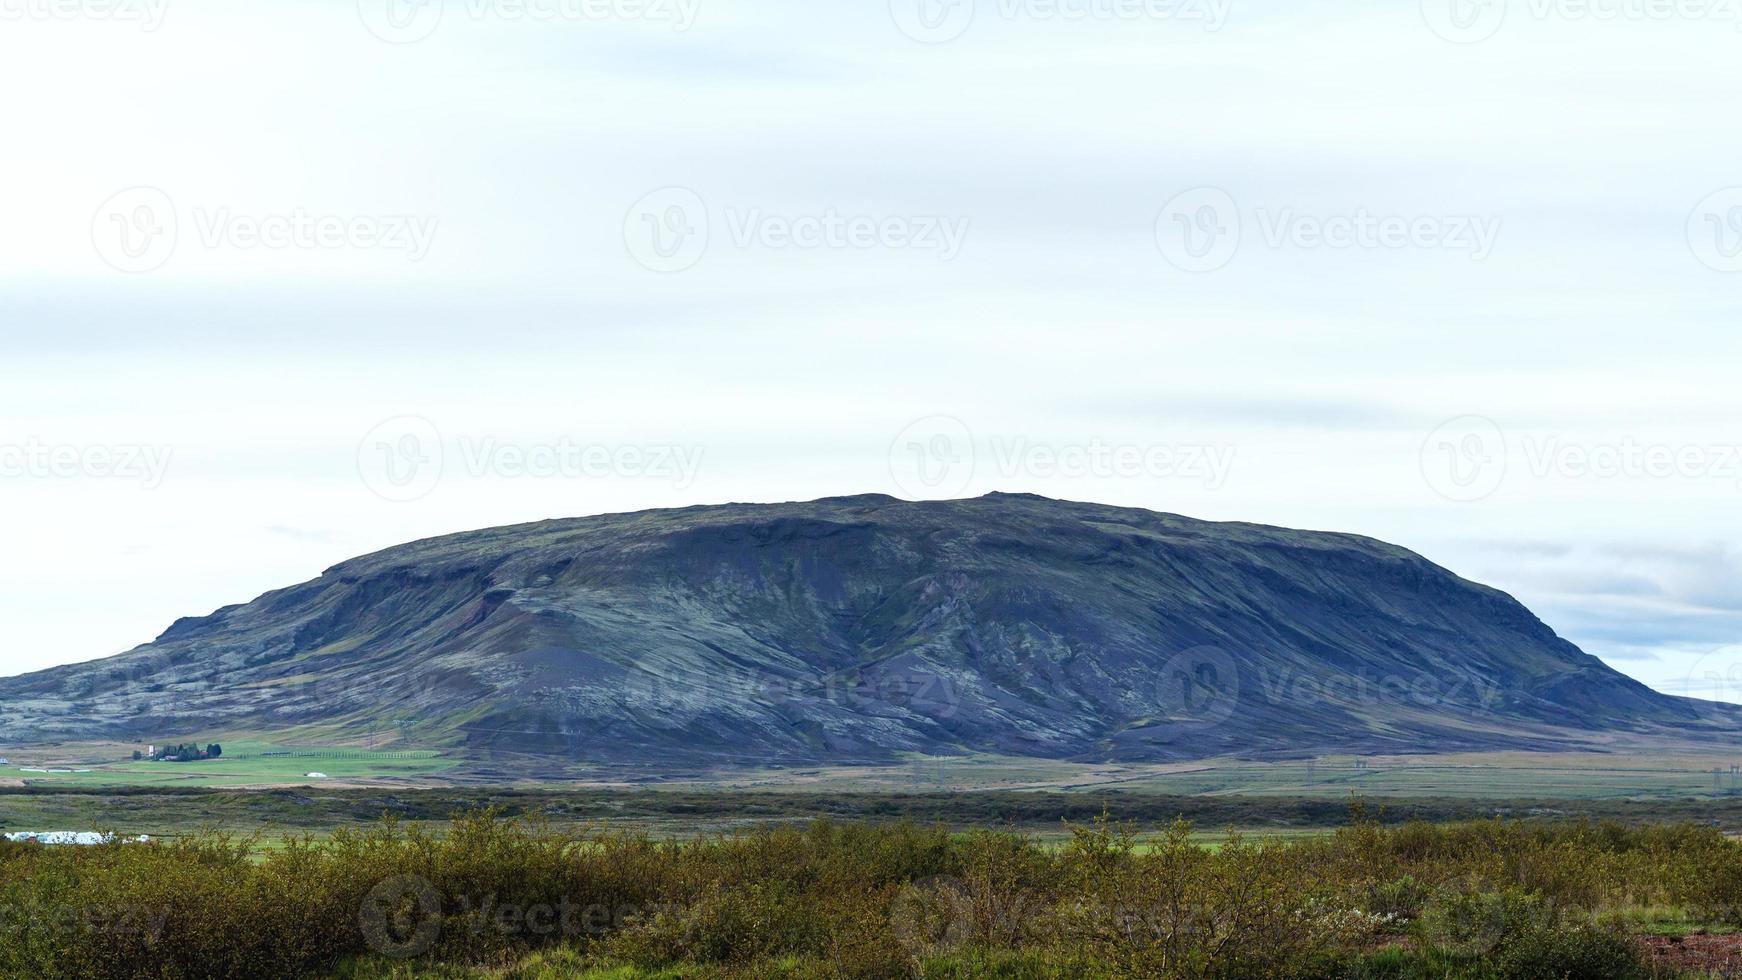 isländische Landschaft mit Hügel im Septemberabend foto